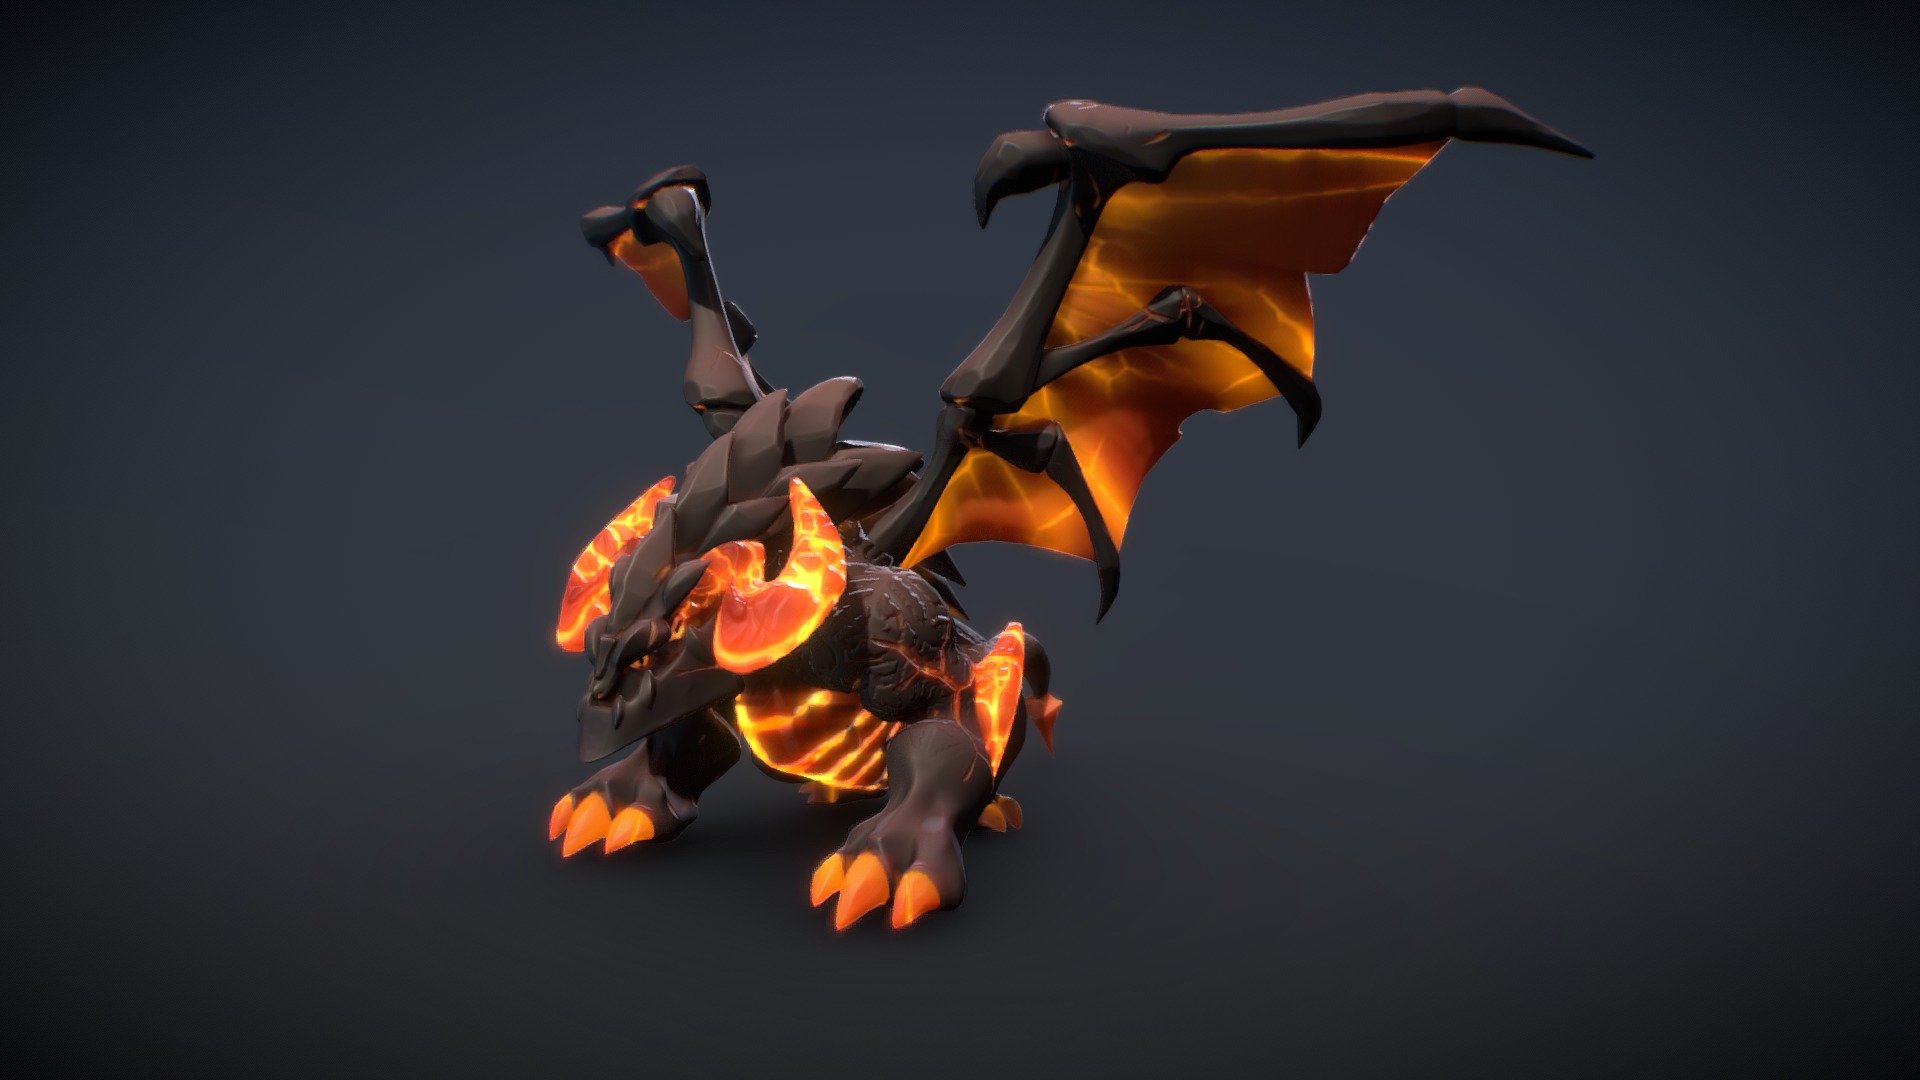 Stylized lava Dragon - Stylized lava Dragon - 3D model by gourmet_Z (@451454817) 3d model